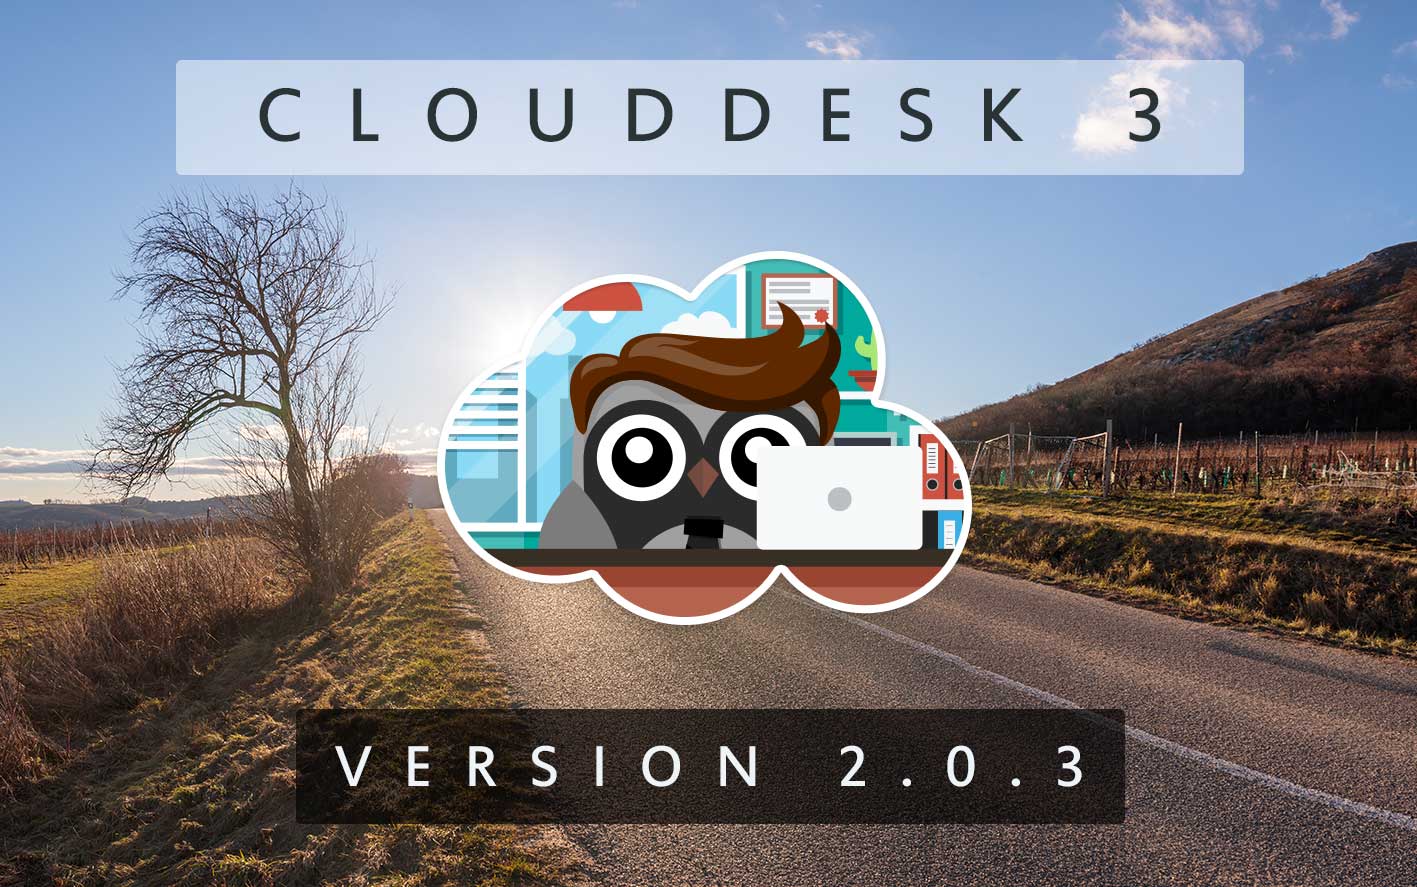 Cloud Desk 3 - Version 2.0.3